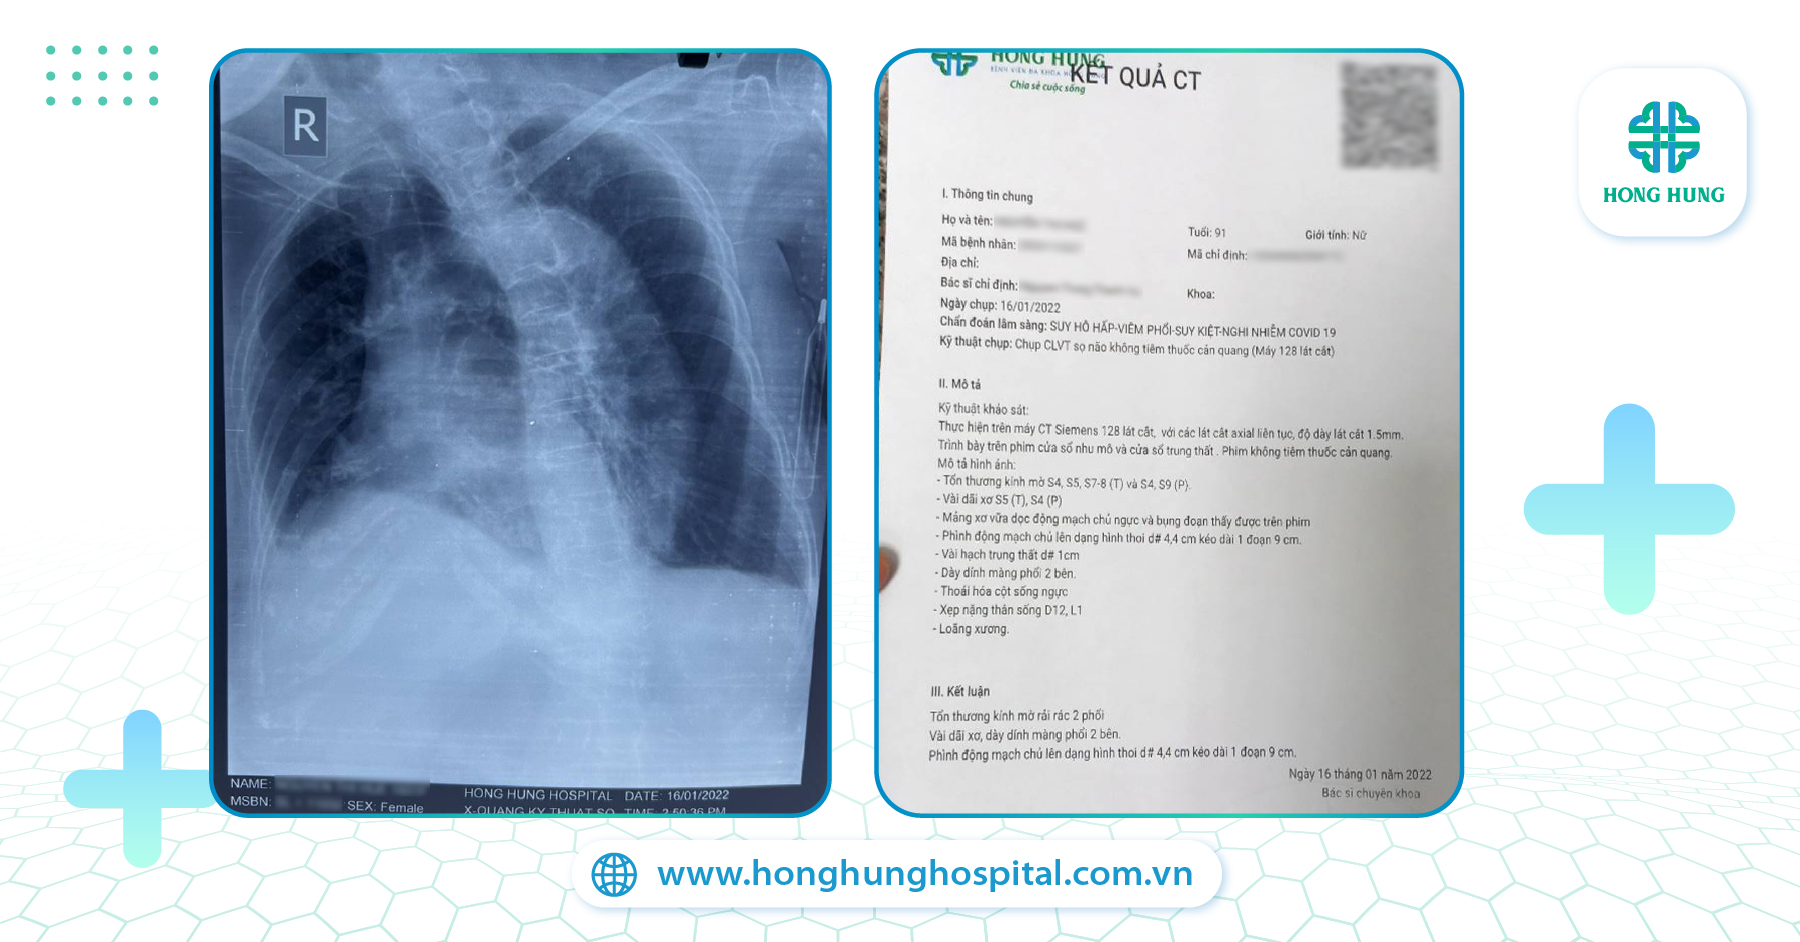 Kết quả CT & chụp X-quang phổi của Bệnh nhân cho thấy có tổn thương kính mờ rải rác ở 2 bên và vài dãi xơ, dày dính màng phổi 2 bên